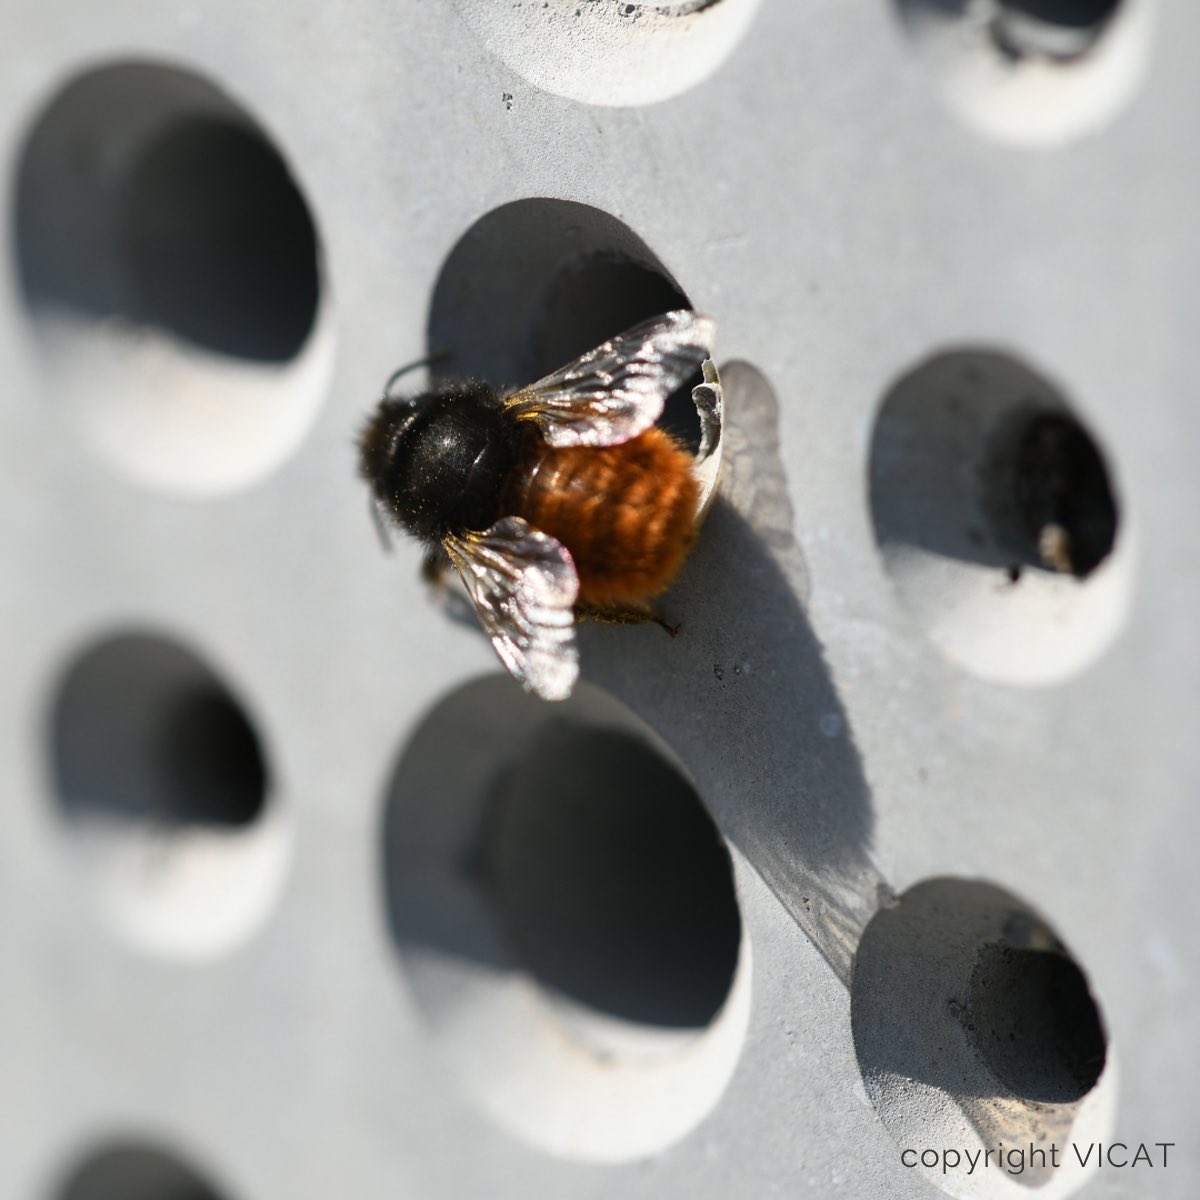 [Innovation] Nichoirs artificiels pour abeilles cavicoles : les abeilles peuvent-elles nicher dans le béton ? Travaux de l’unité de recherche Abeilles et Environnement #Avignon @INRAE_France en collaboration avec @GroupeVicat inrae.fr/actualites/nic…